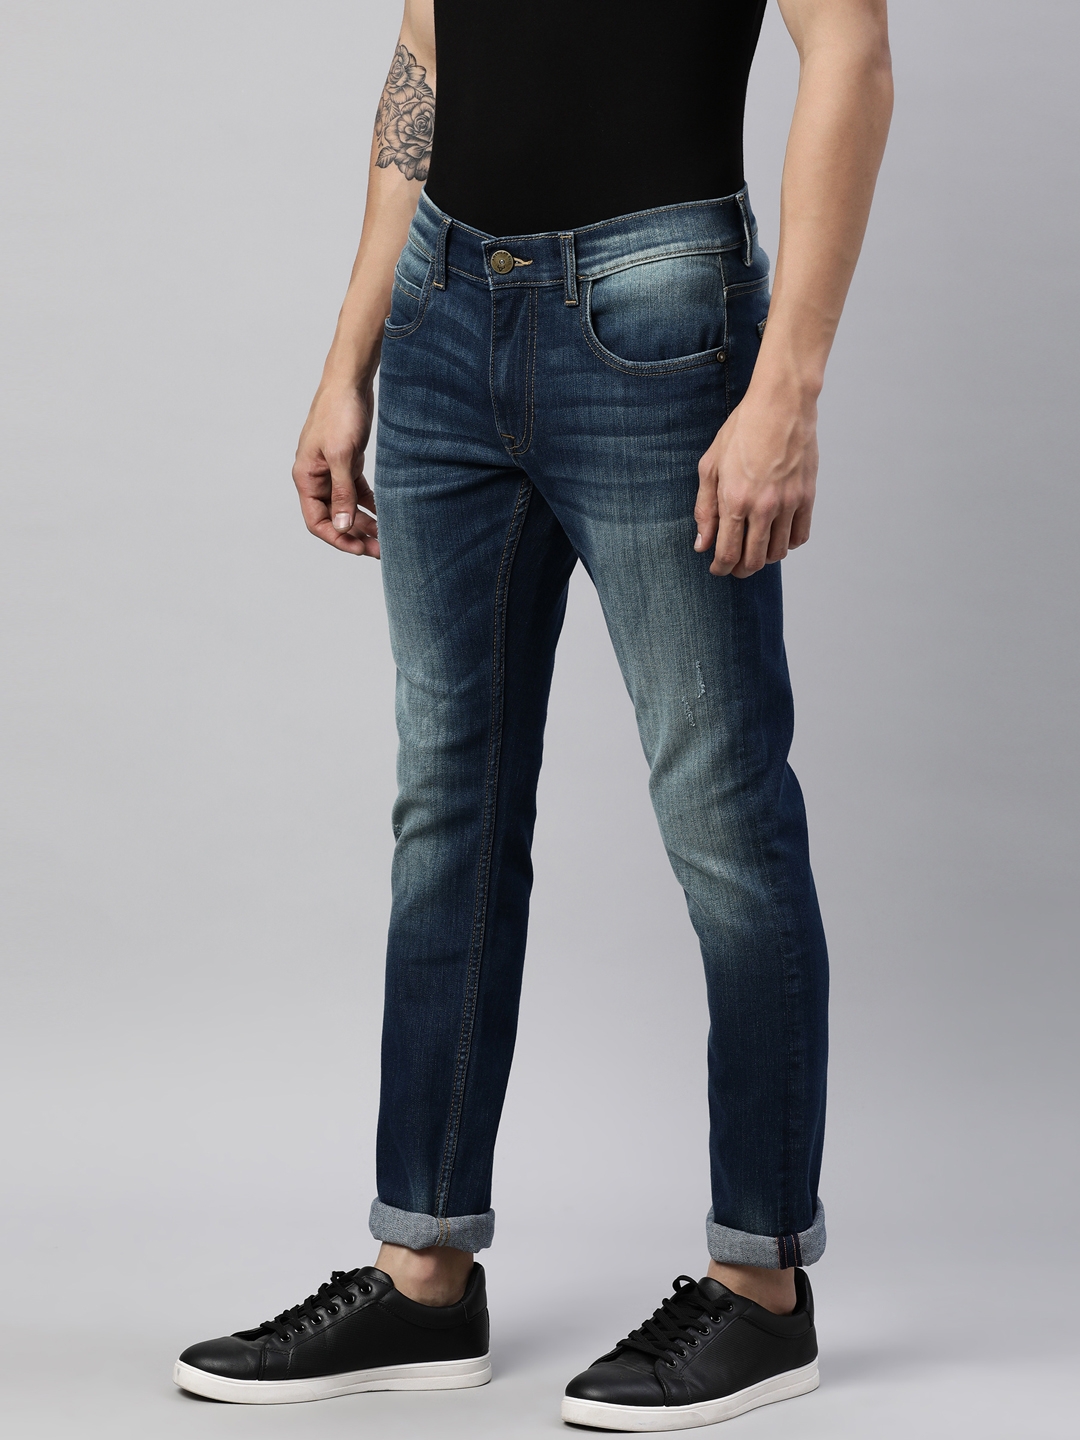 American Bull | American Bull Mens Solid Full length Denim Jeans 2